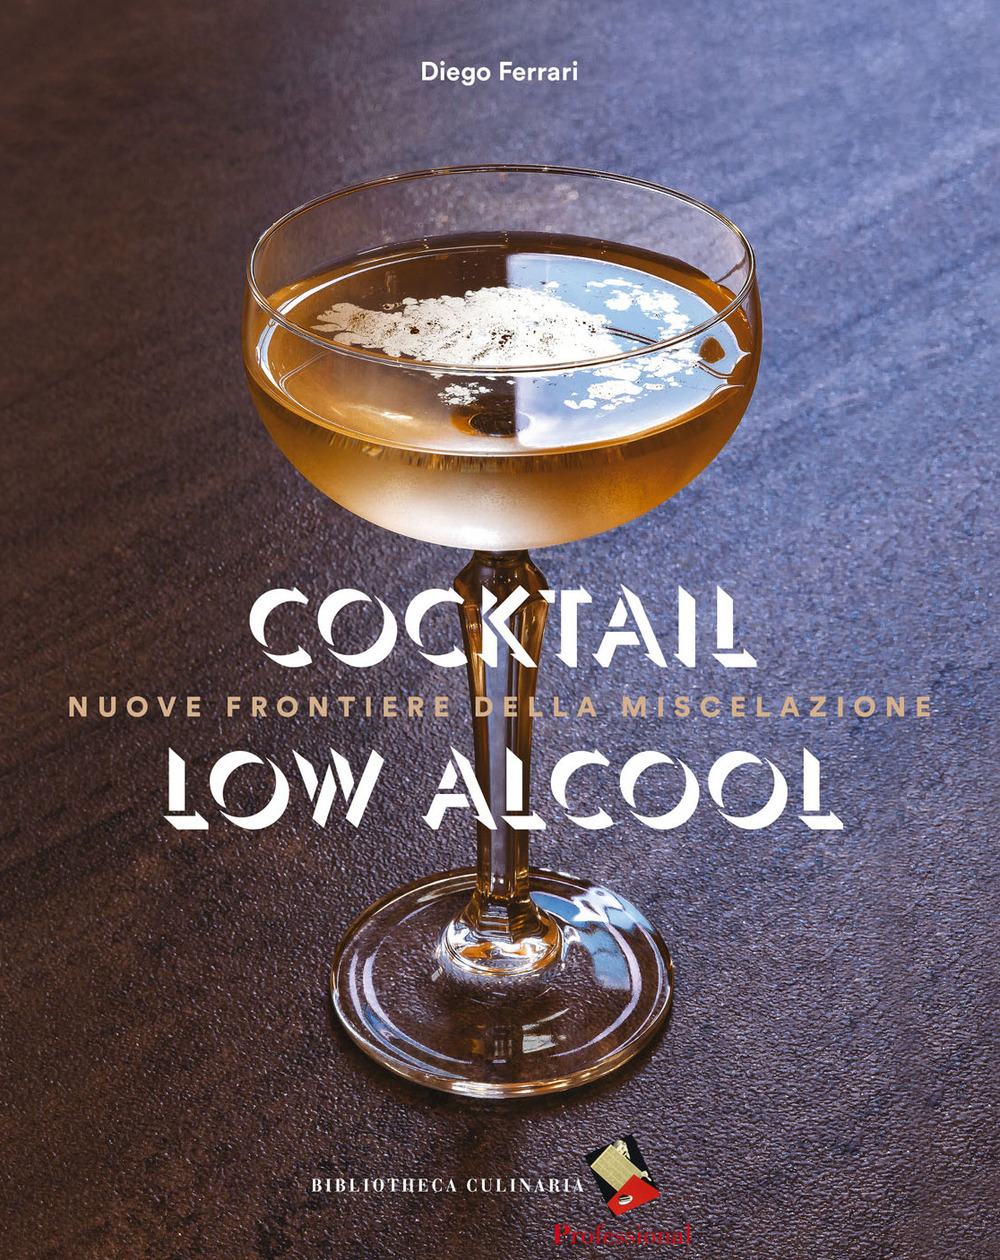 Cocktail low alcool. Nuove frontiere della miscelazione